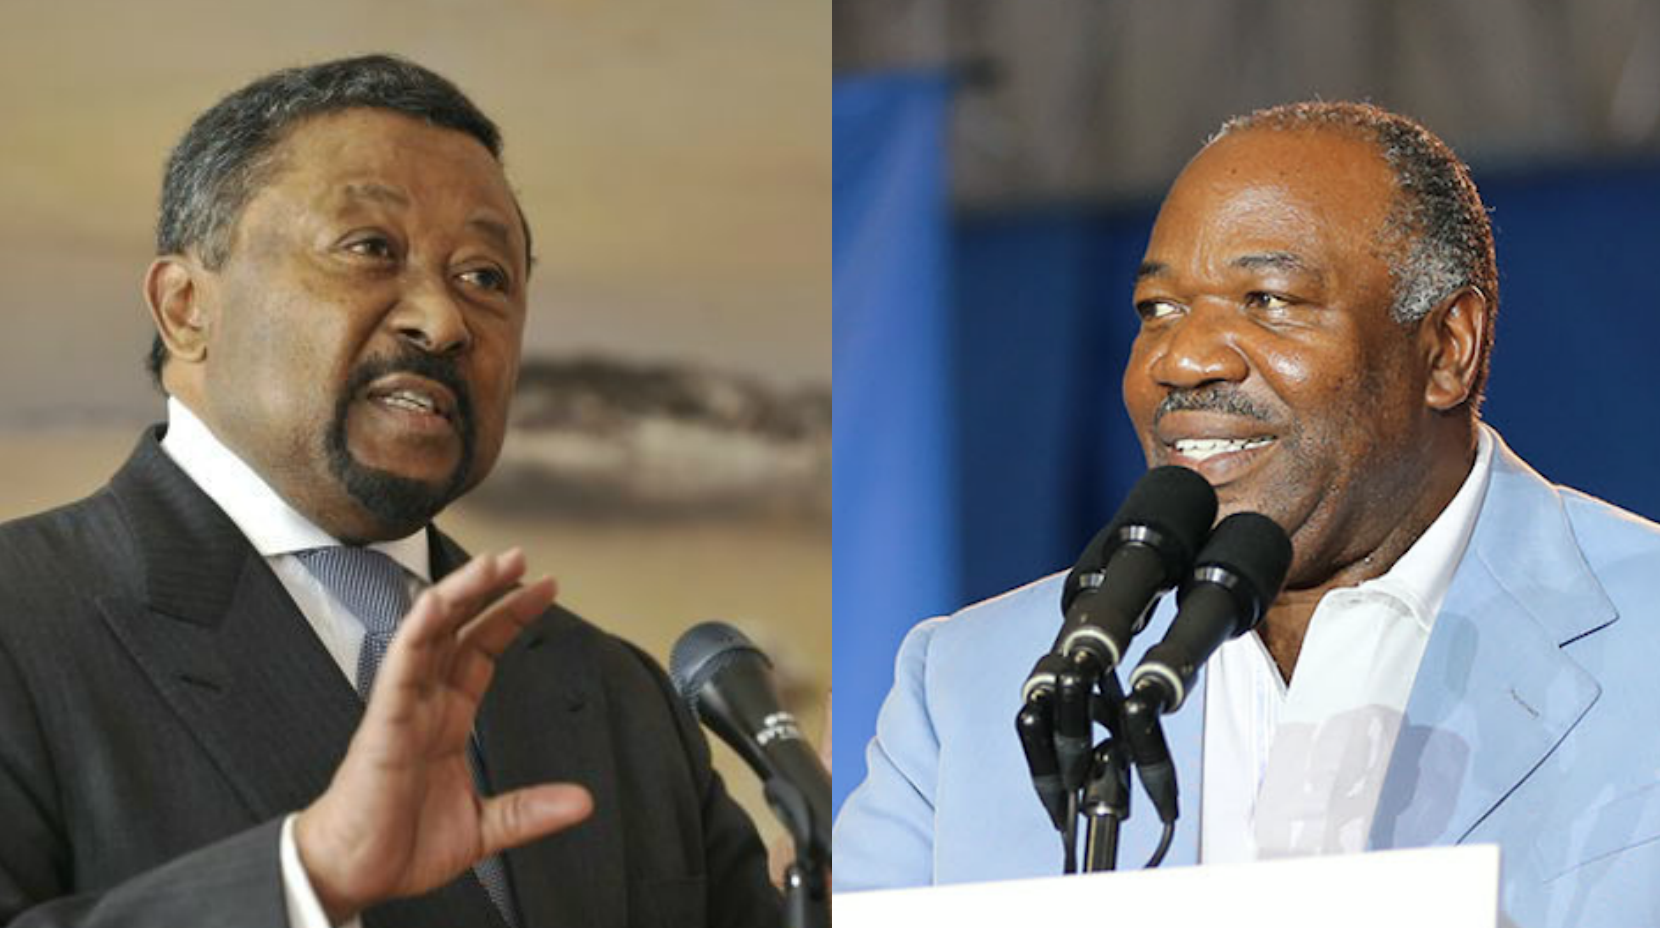 Présidentielle au Gabon : tensions et guerre des chiffres (Jeune Afrique)